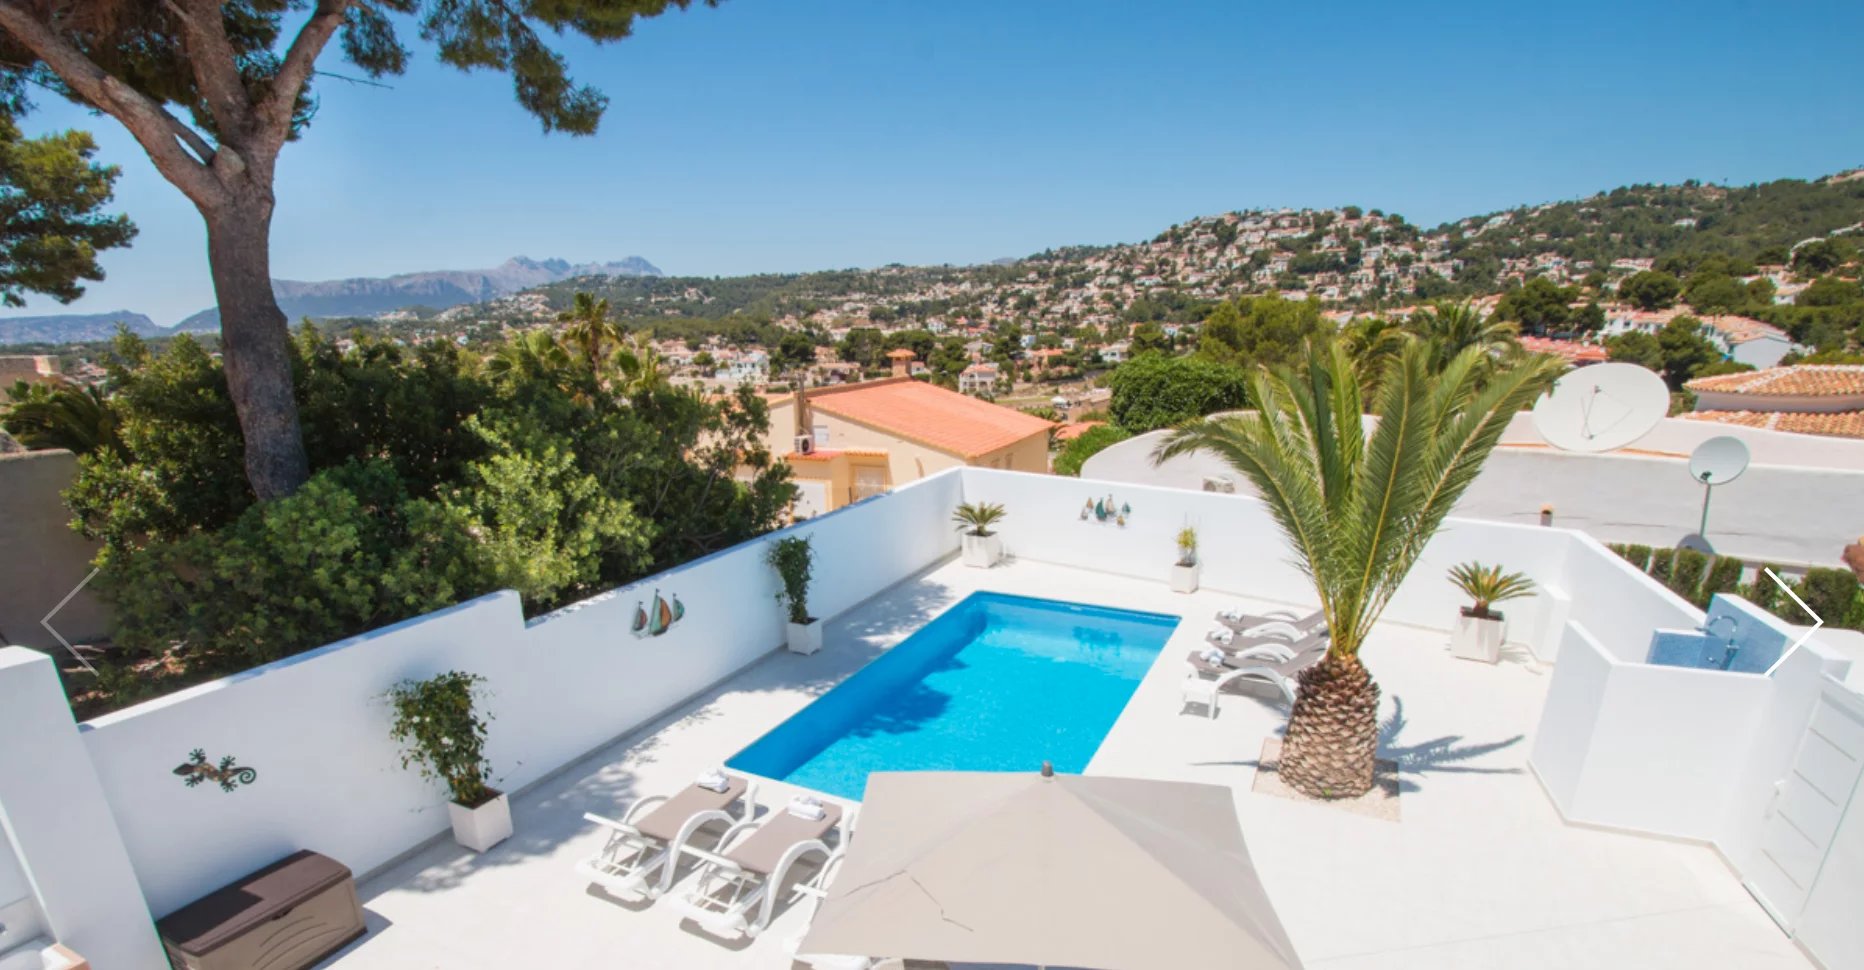 Grote villa met 3 accommodaties en 2 privézwembaden te koop in San Jaime